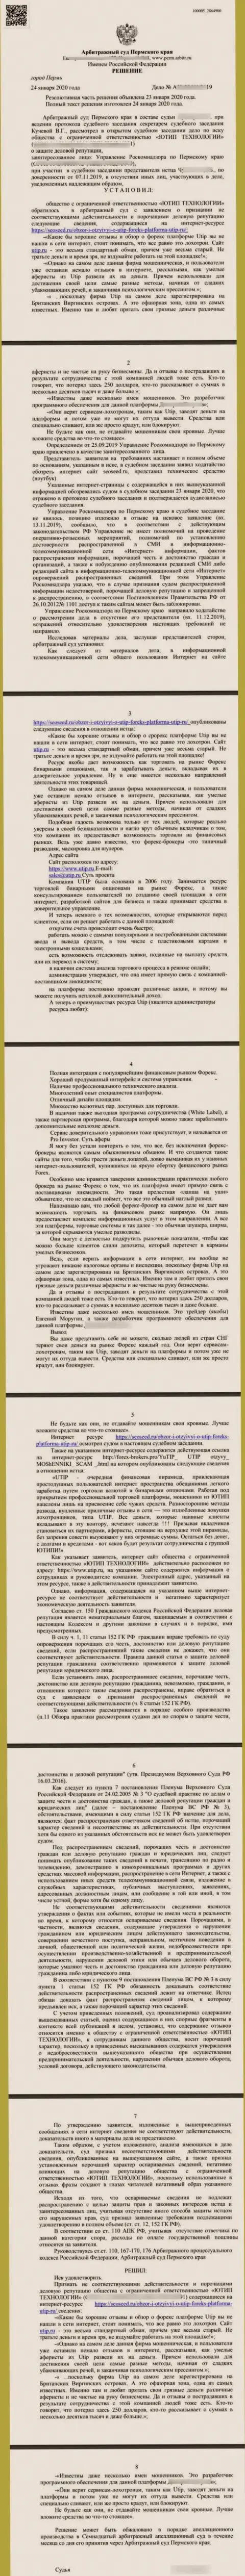 Судебный иск аферистов UTIP Ru, который оказался удовлетворенным самым справедливым судом в мире